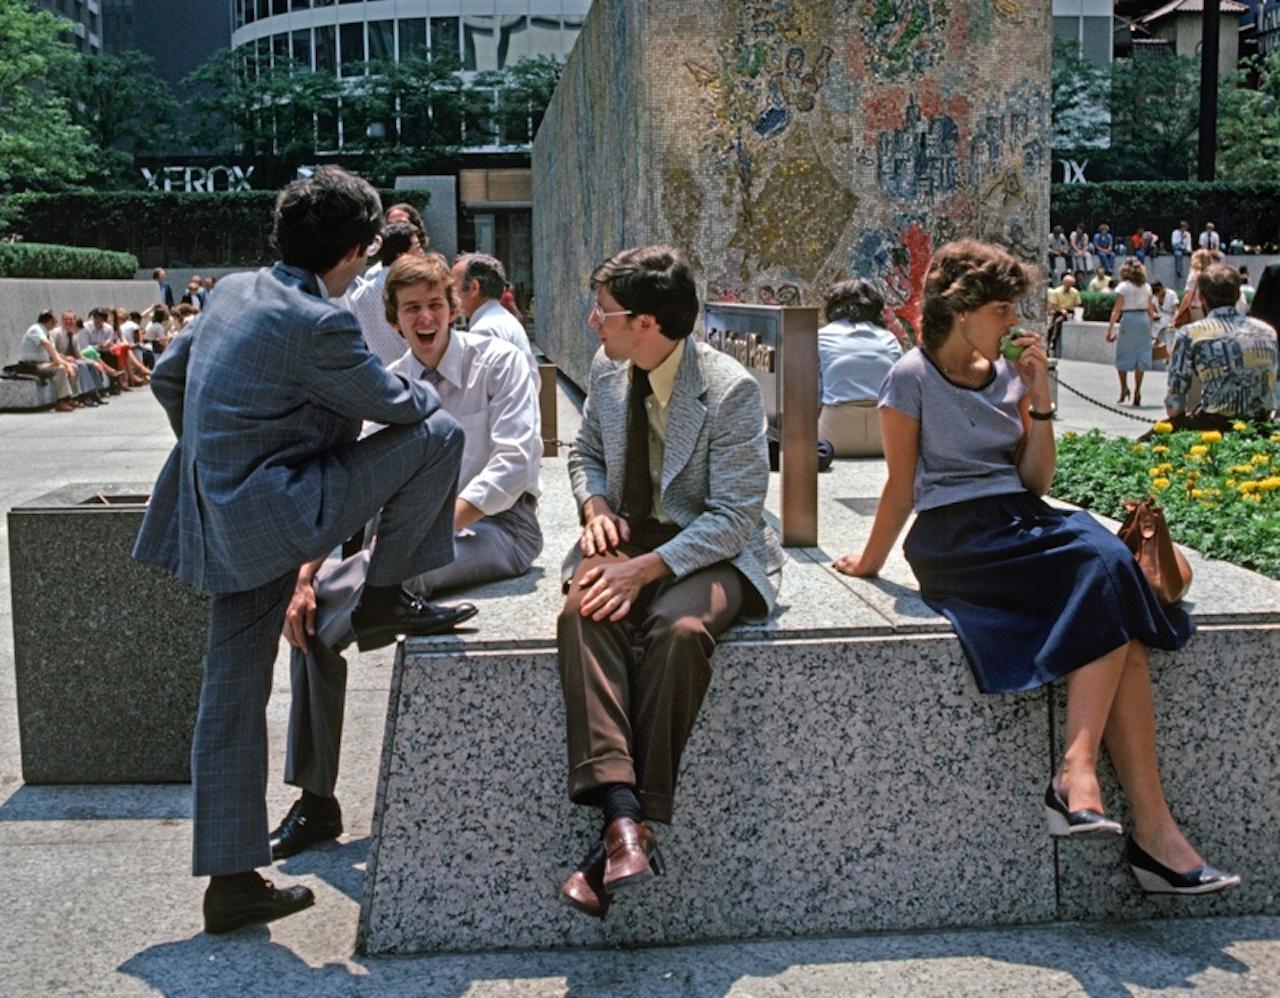 Mittagspause von Alain Le Garsmeur
Ein Mittagspublikum entspannt sich vor Marc Chagalls Mosaik "Vier Jahreszeiten" im Chase Tower Plaza, Chicago, Illinois, USA, 1979. 

Papierformat 20 x 24 Zoll / 50 x 60 cm
Gedruckt im Jahr 2022 - hergestellt von